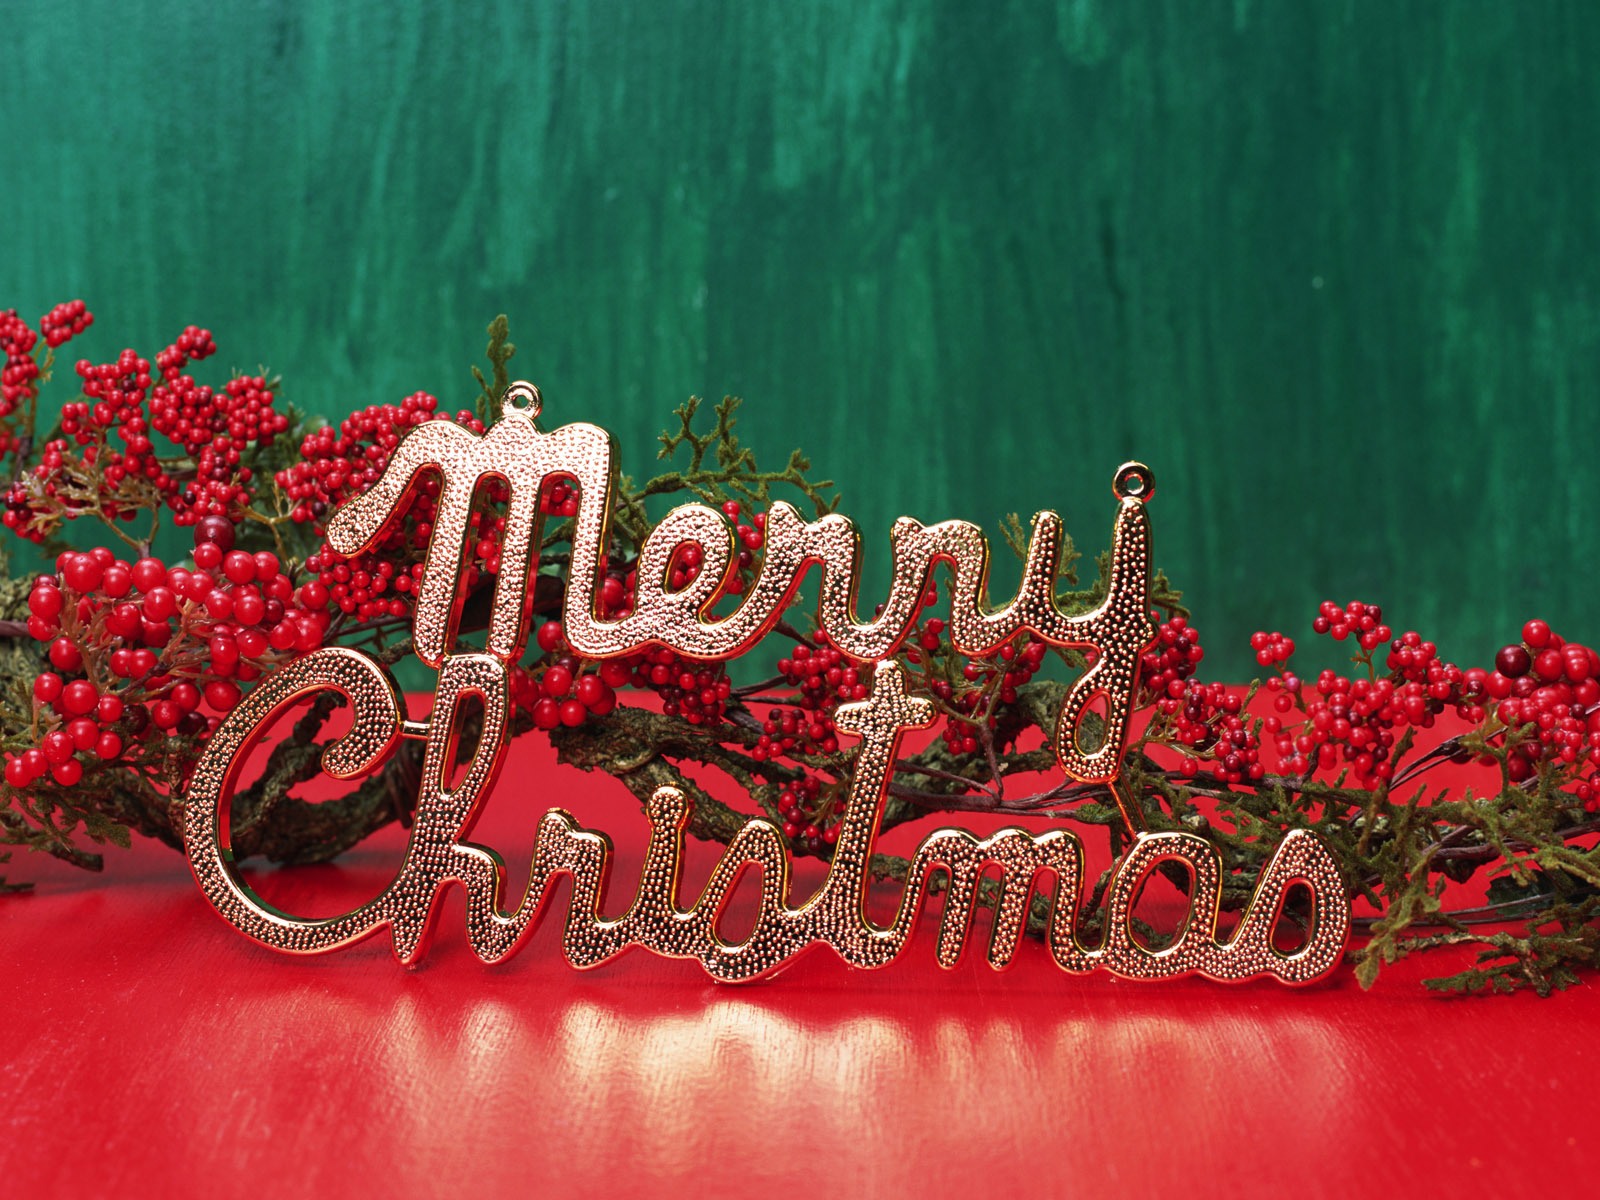 احلى صور بطاقات تهنئة بالعام الميلادي الجديد 2014 merry christmas and a happy new year